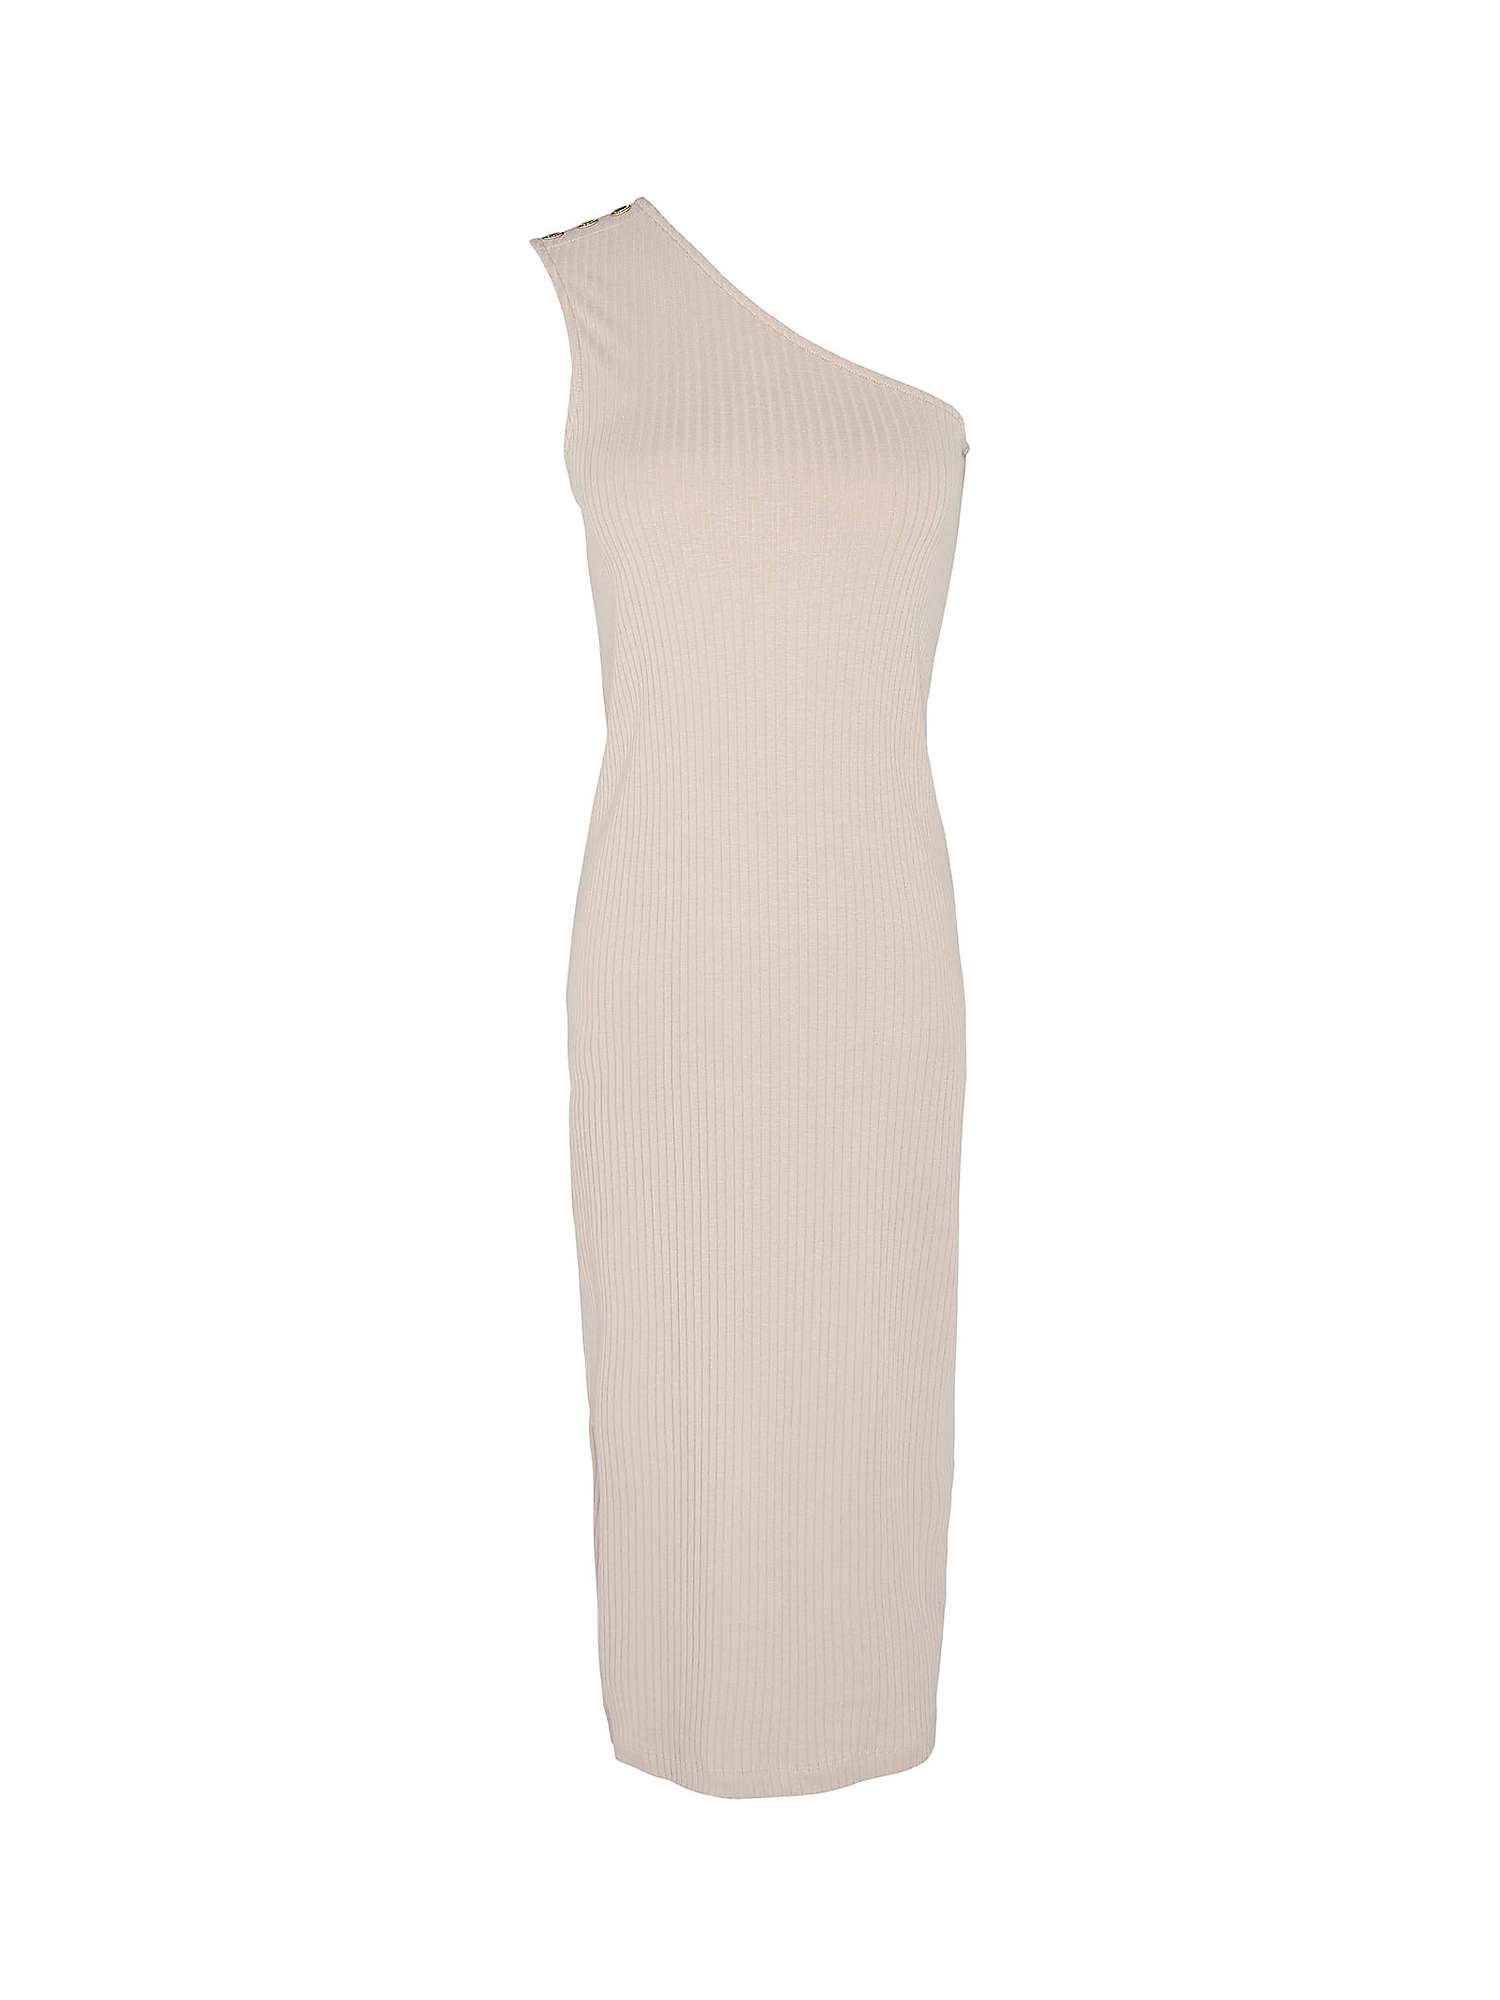 Buy Barbour International Parisse Ribbed Jersey Dress, Oat Online at johnlewis.com